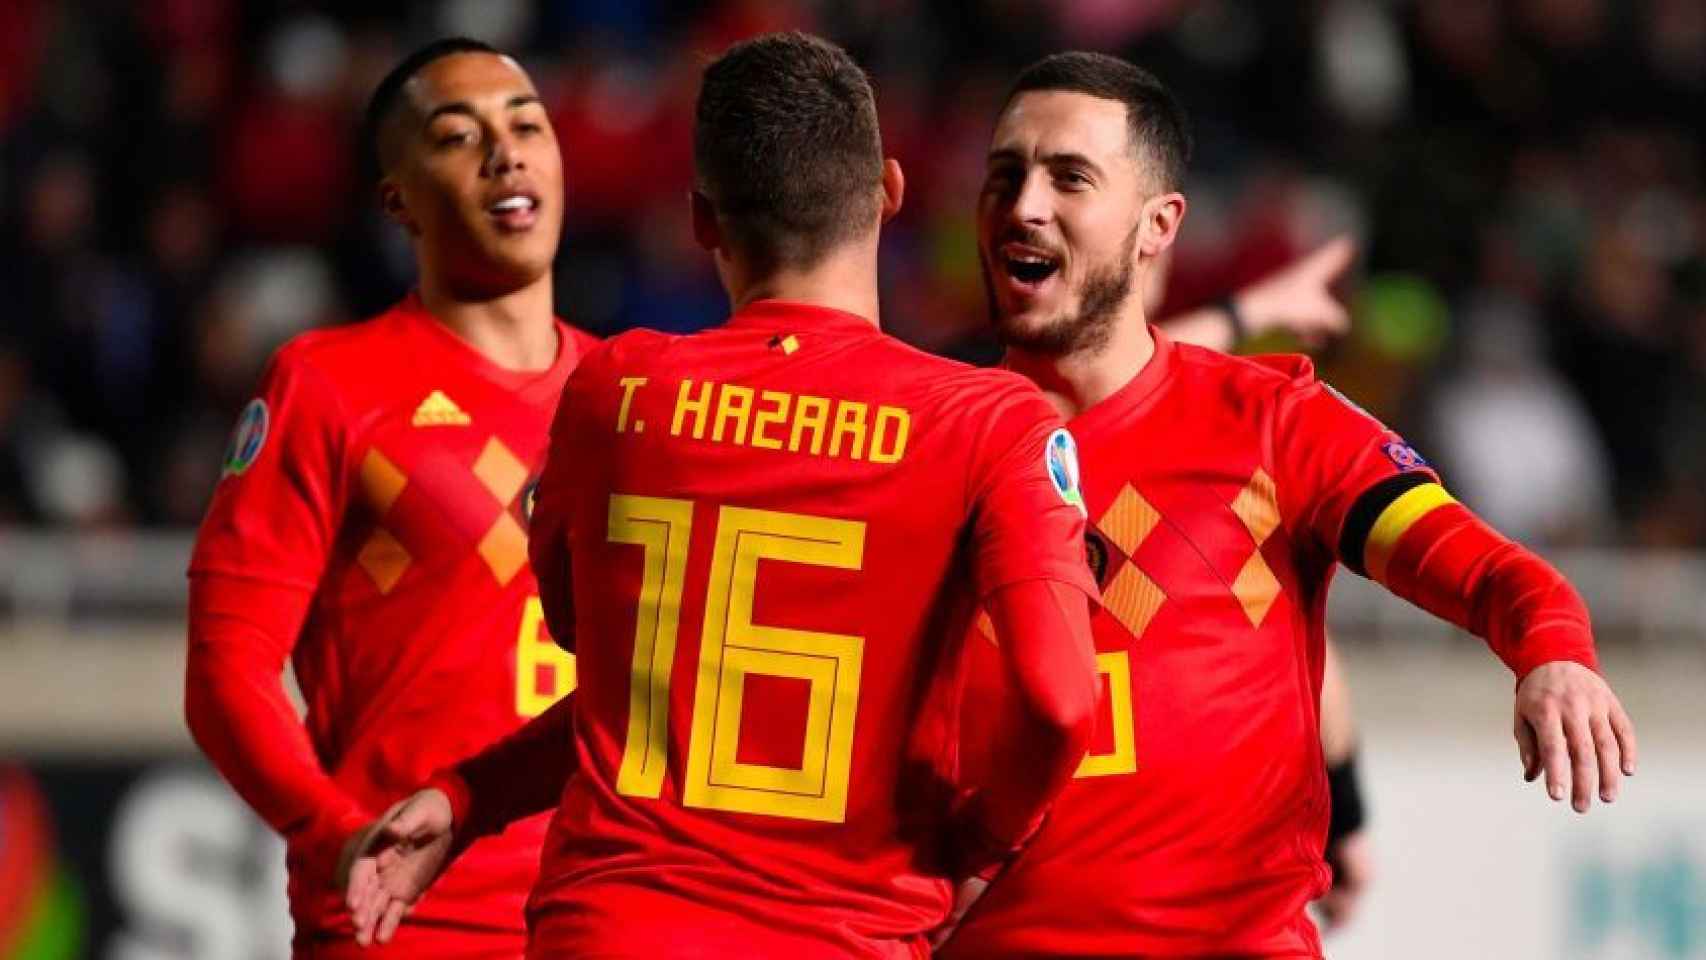 Thorgan y Eden Hazard celebran un gol con Bélgica